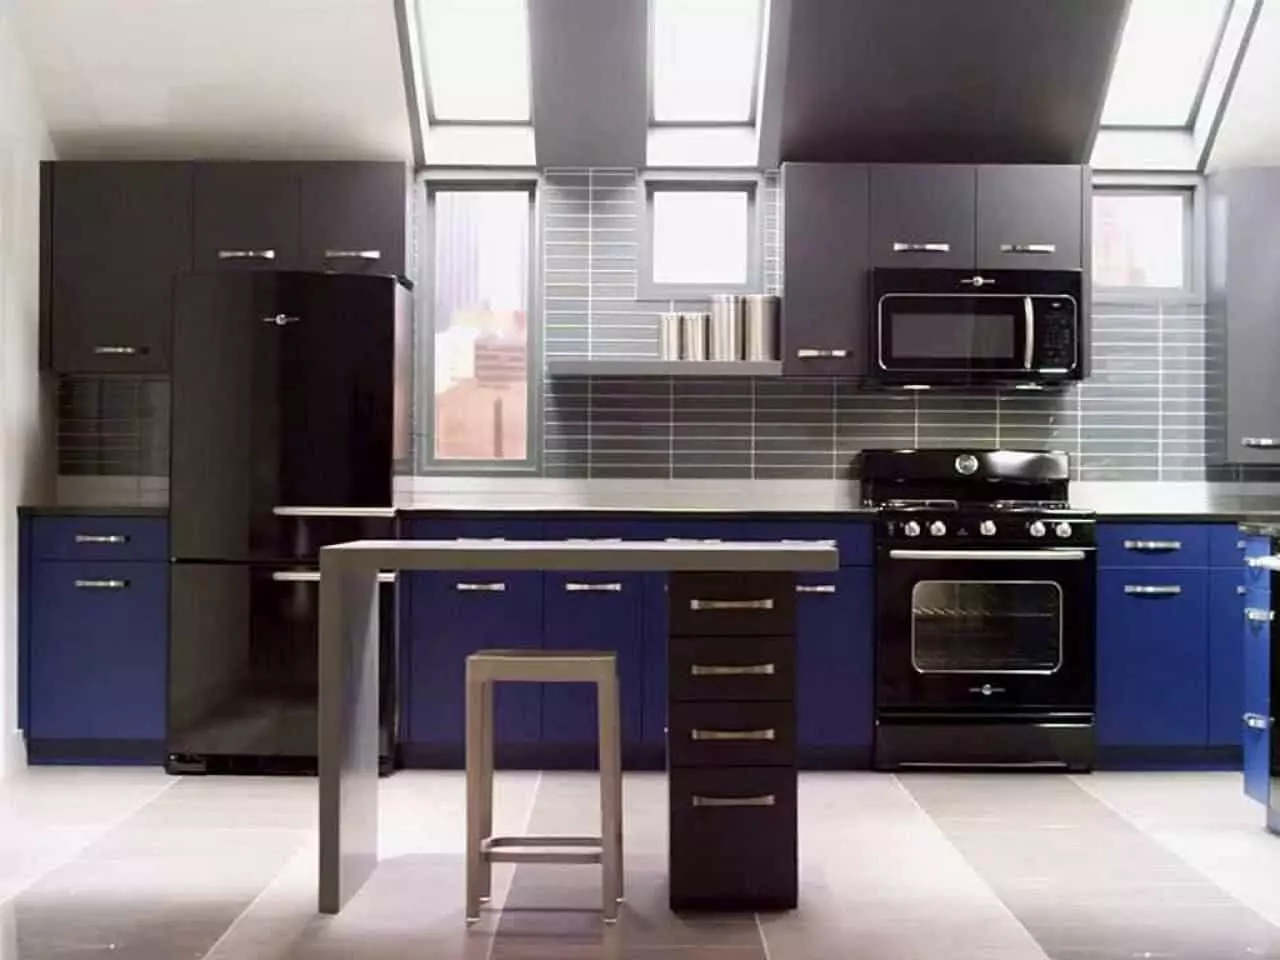 بلیک باورچی خانے (100 فوٹو): سیاہ مخمل باورچی خانے میں سیاہ مخمل باورچی خانے میں لکڑی کے ساتھ سیٹ، دھندلا اور چمکدار باورچی خانے میں بھوری رنگ سیاہ رنگ، سیاہ دیوار ڈیزائن 21175_54